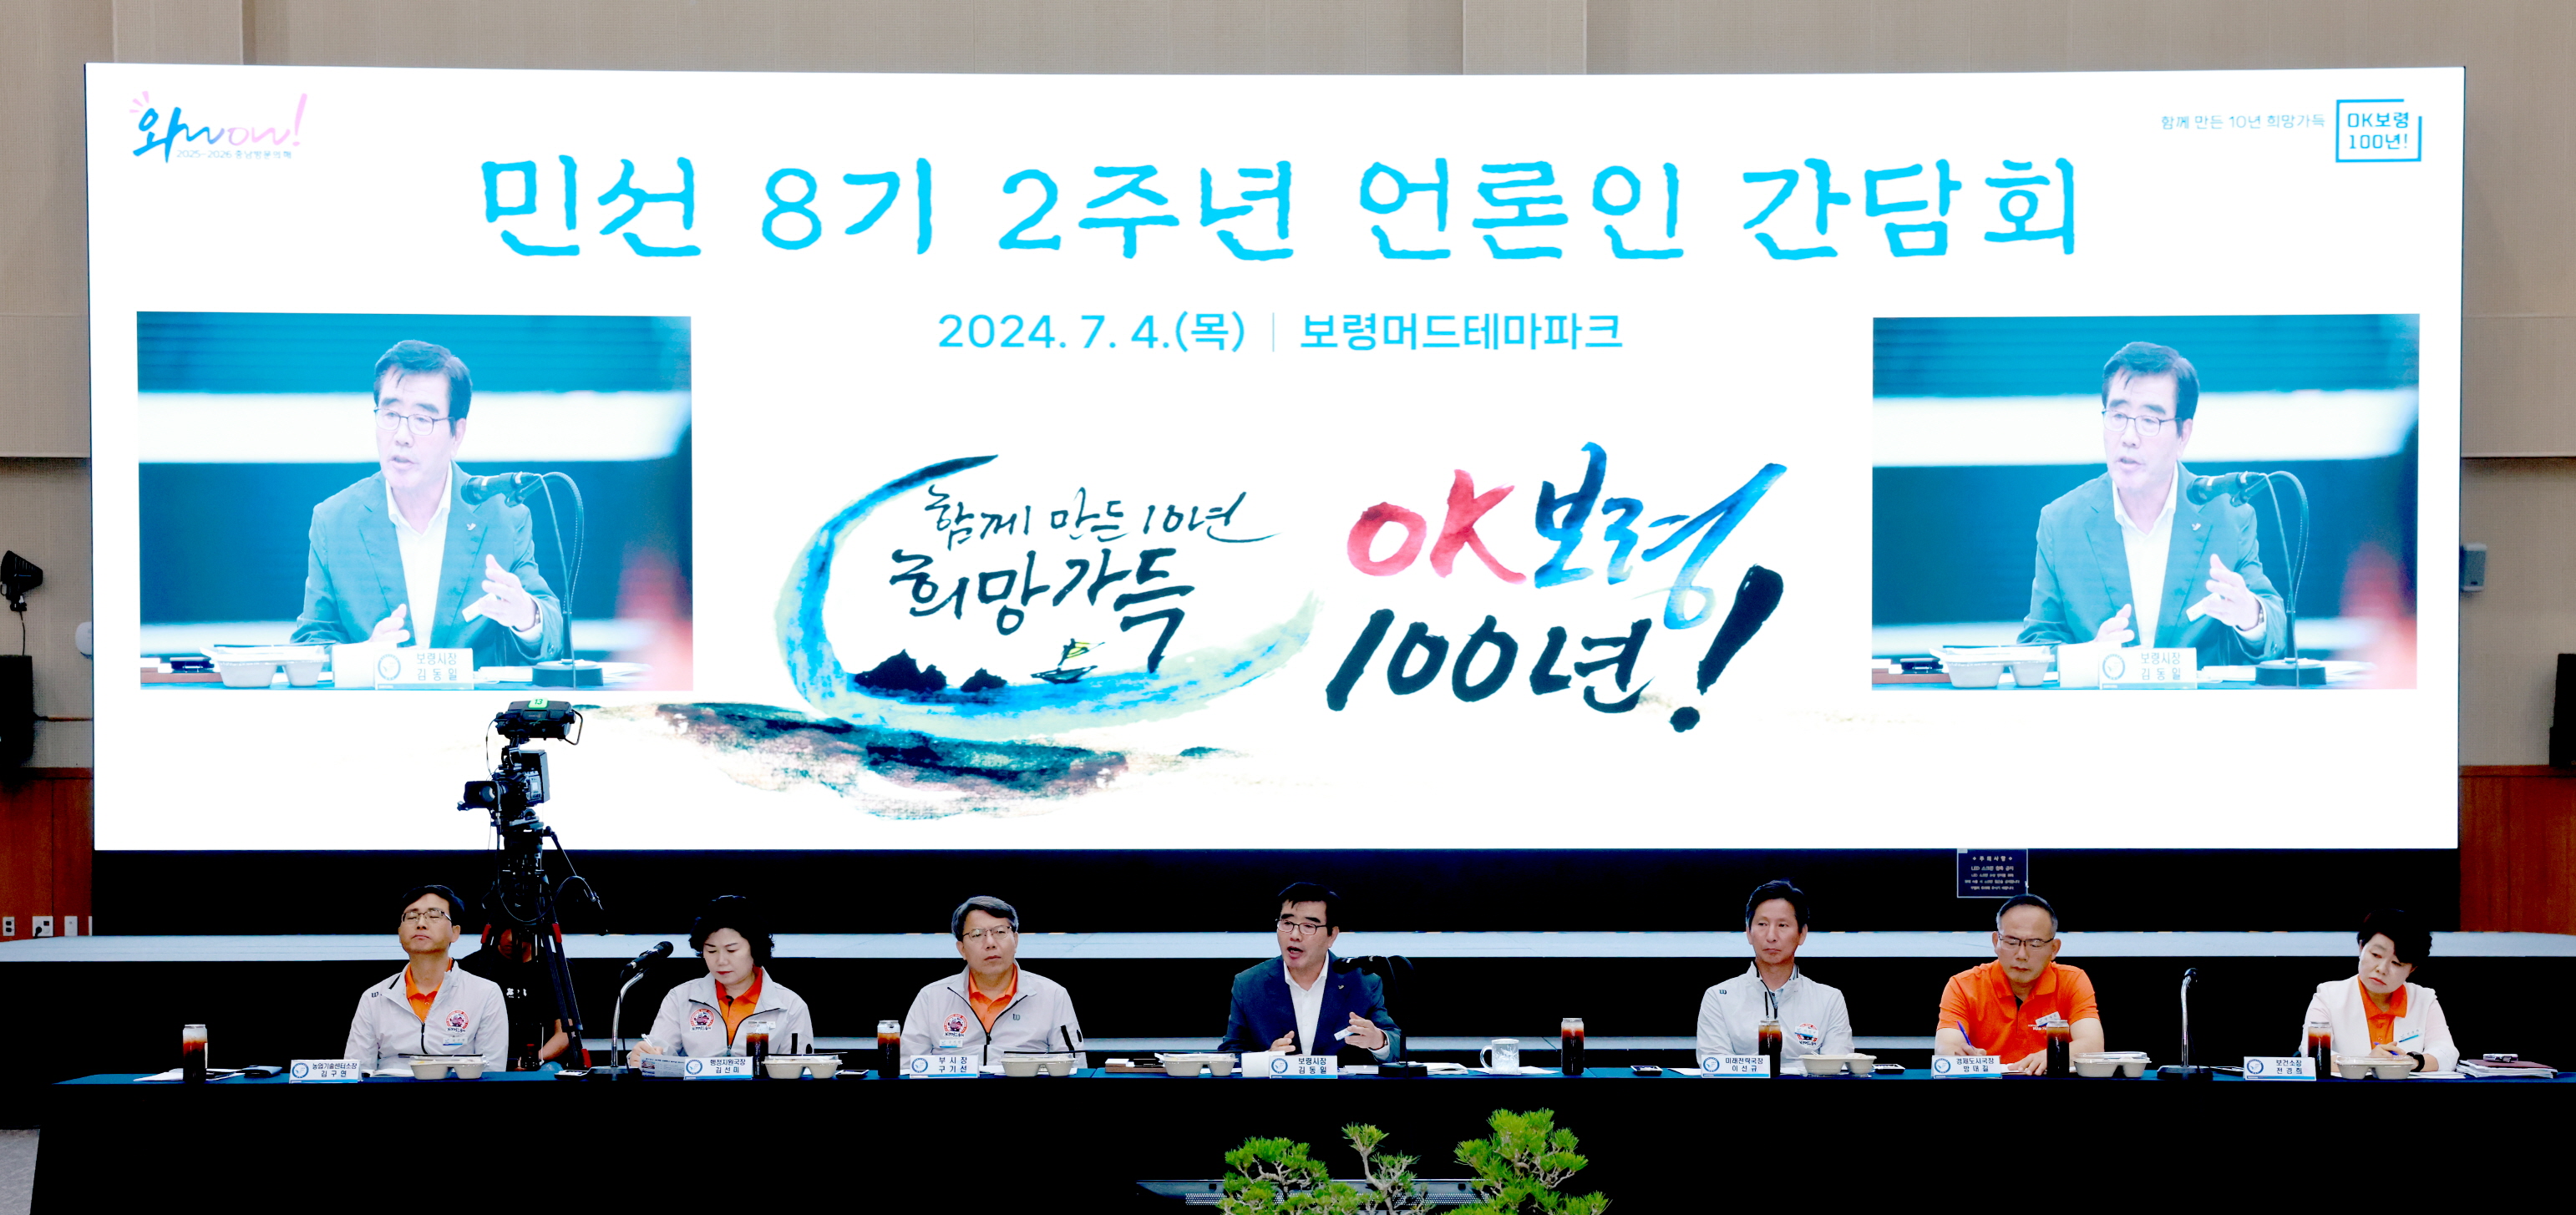 민선8기 2주년 언론인 간담회